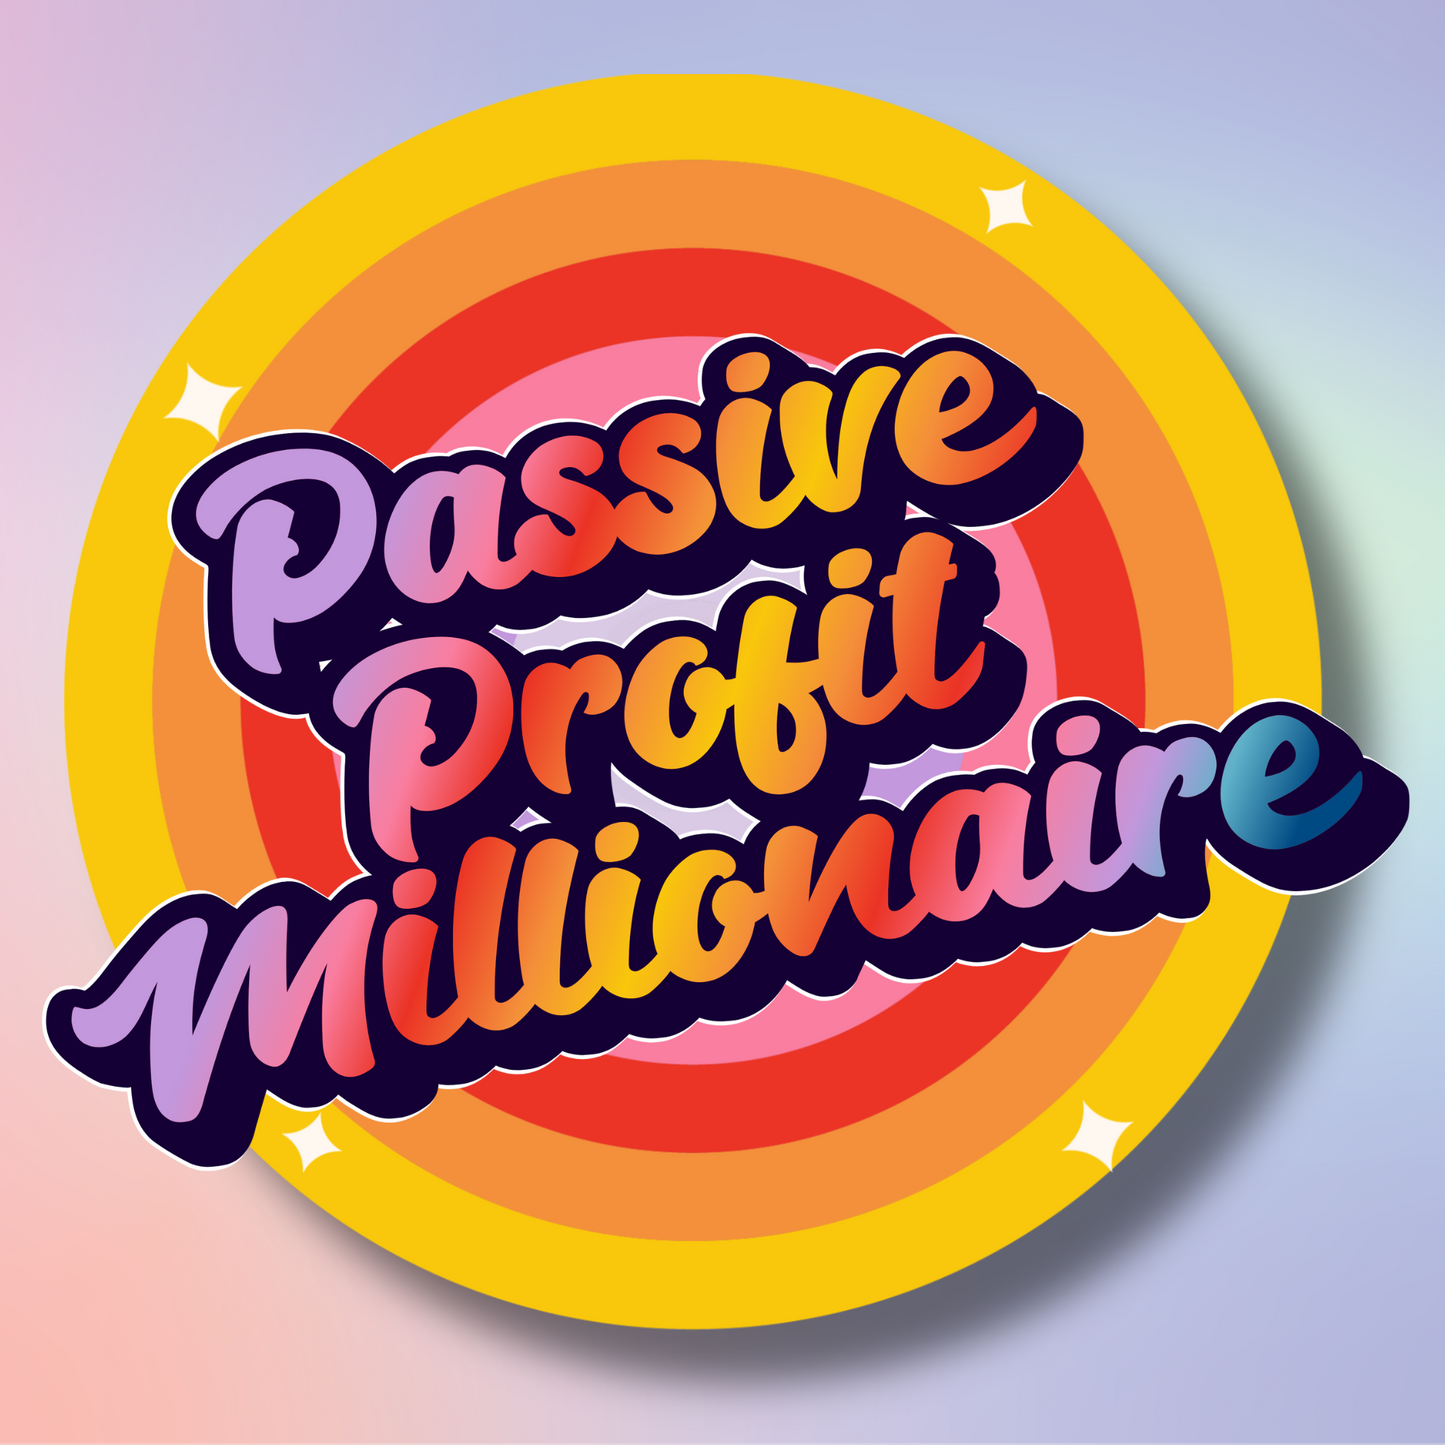 Passive Profit Millionaire